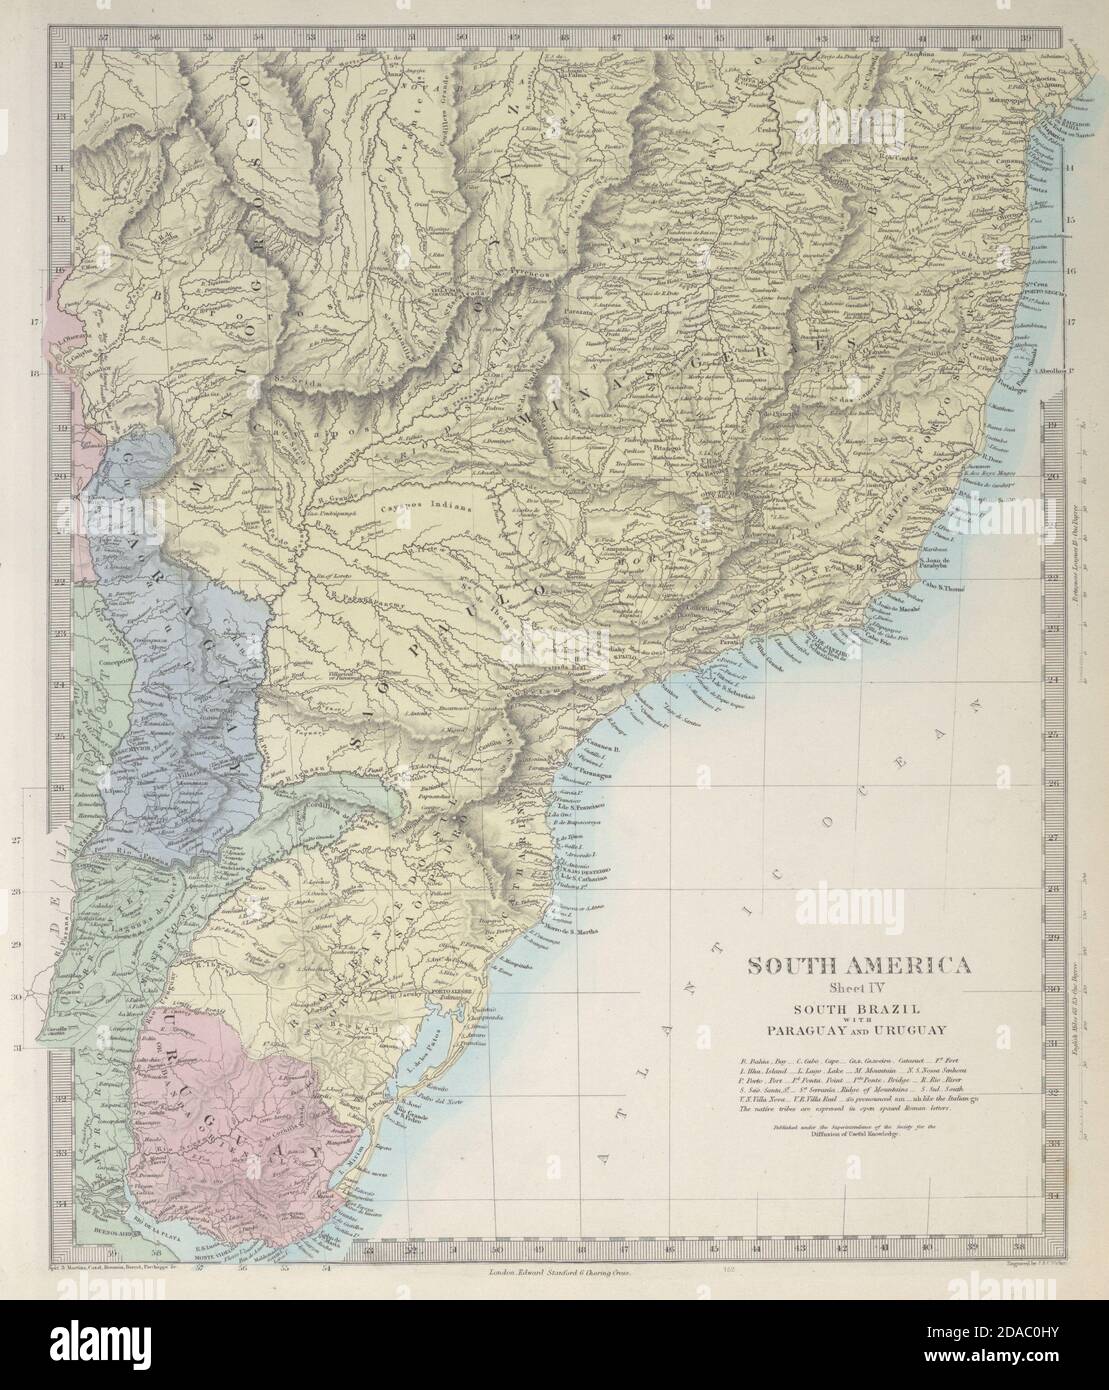 BRASIL DEL SUR PARAGUAY URUGUAY. Bahia Minas Gerais São Paulo. SDUK 1857 mapa antiguo Foto de stock